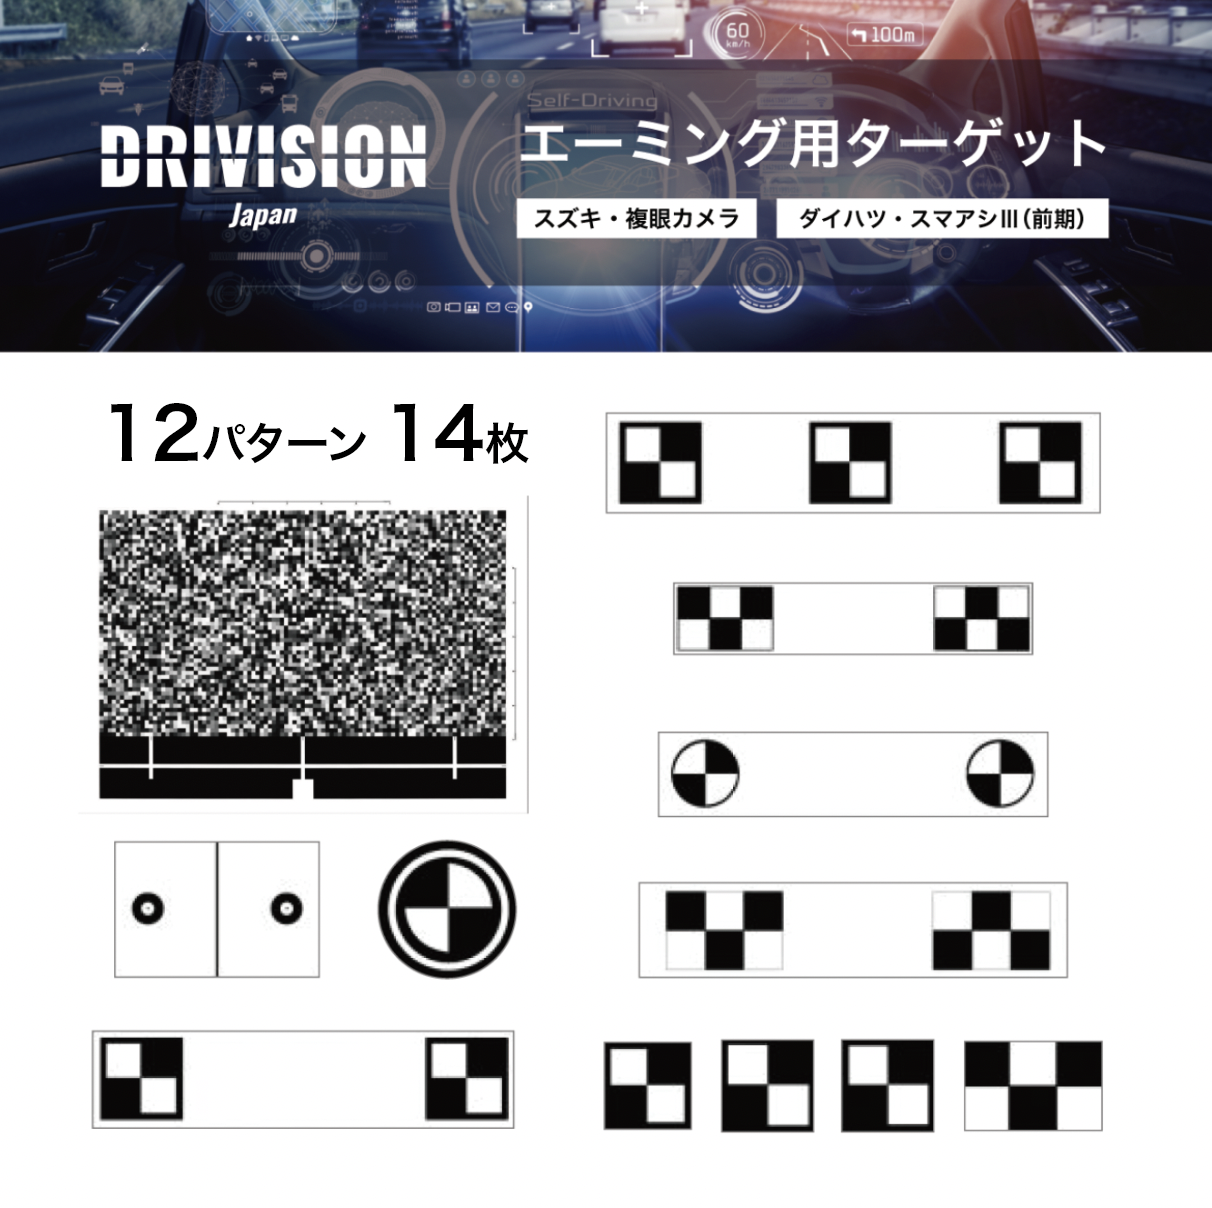 注目商品: DRIVISION Japan カメラ光軸調整用ターゲットセット 12